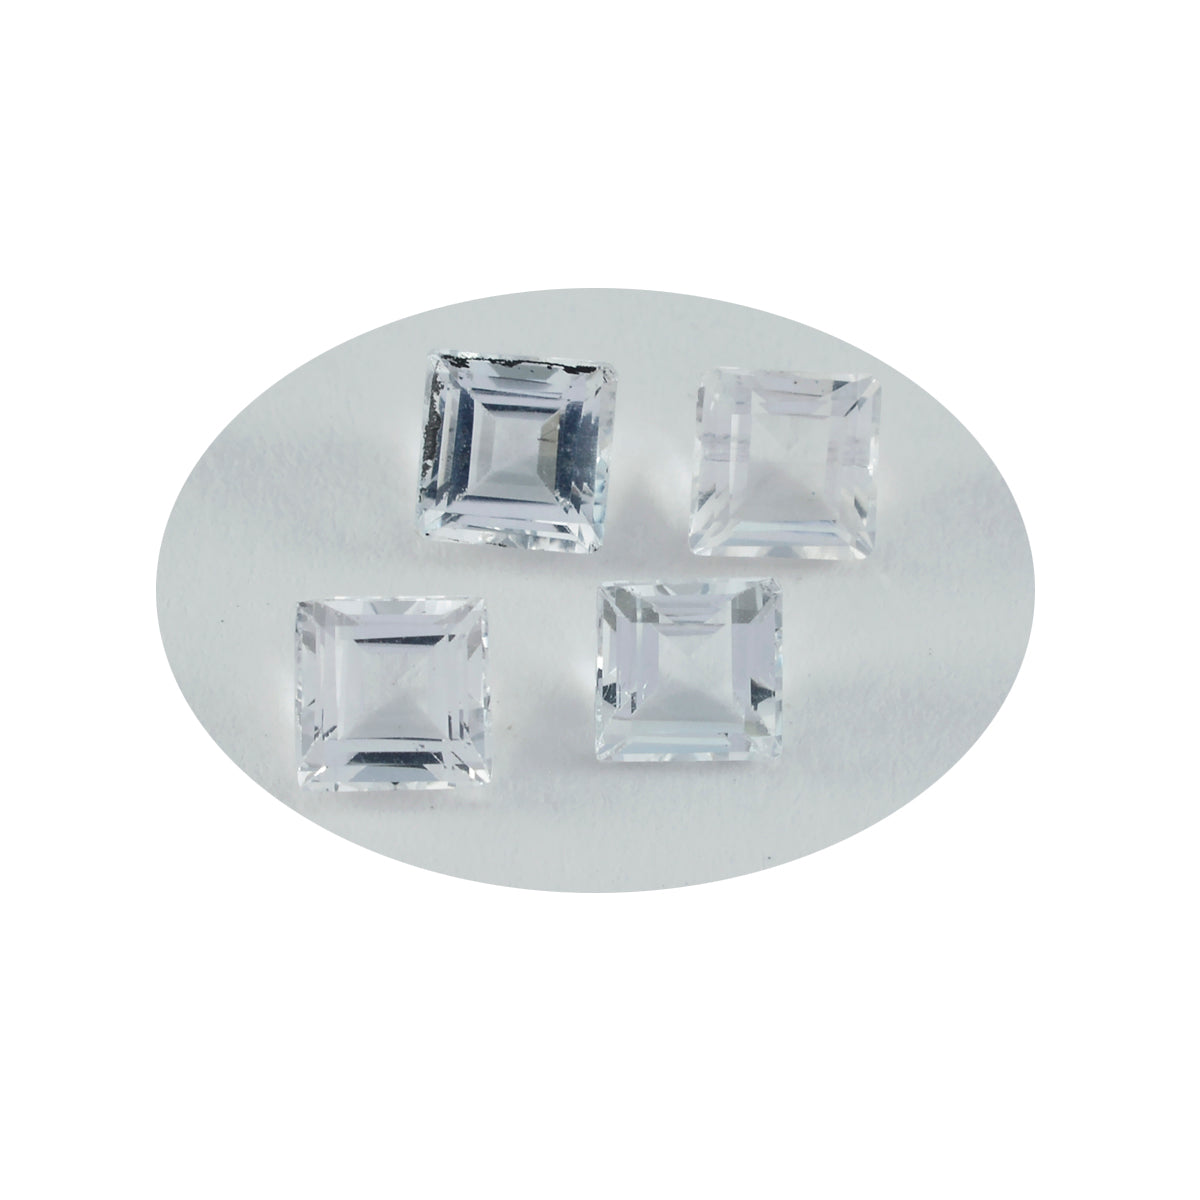 riyogems 1 шт. белый кристалл кварца граненый 7x7 мм квадратной формы красивый качественный свободный драгоценный камень